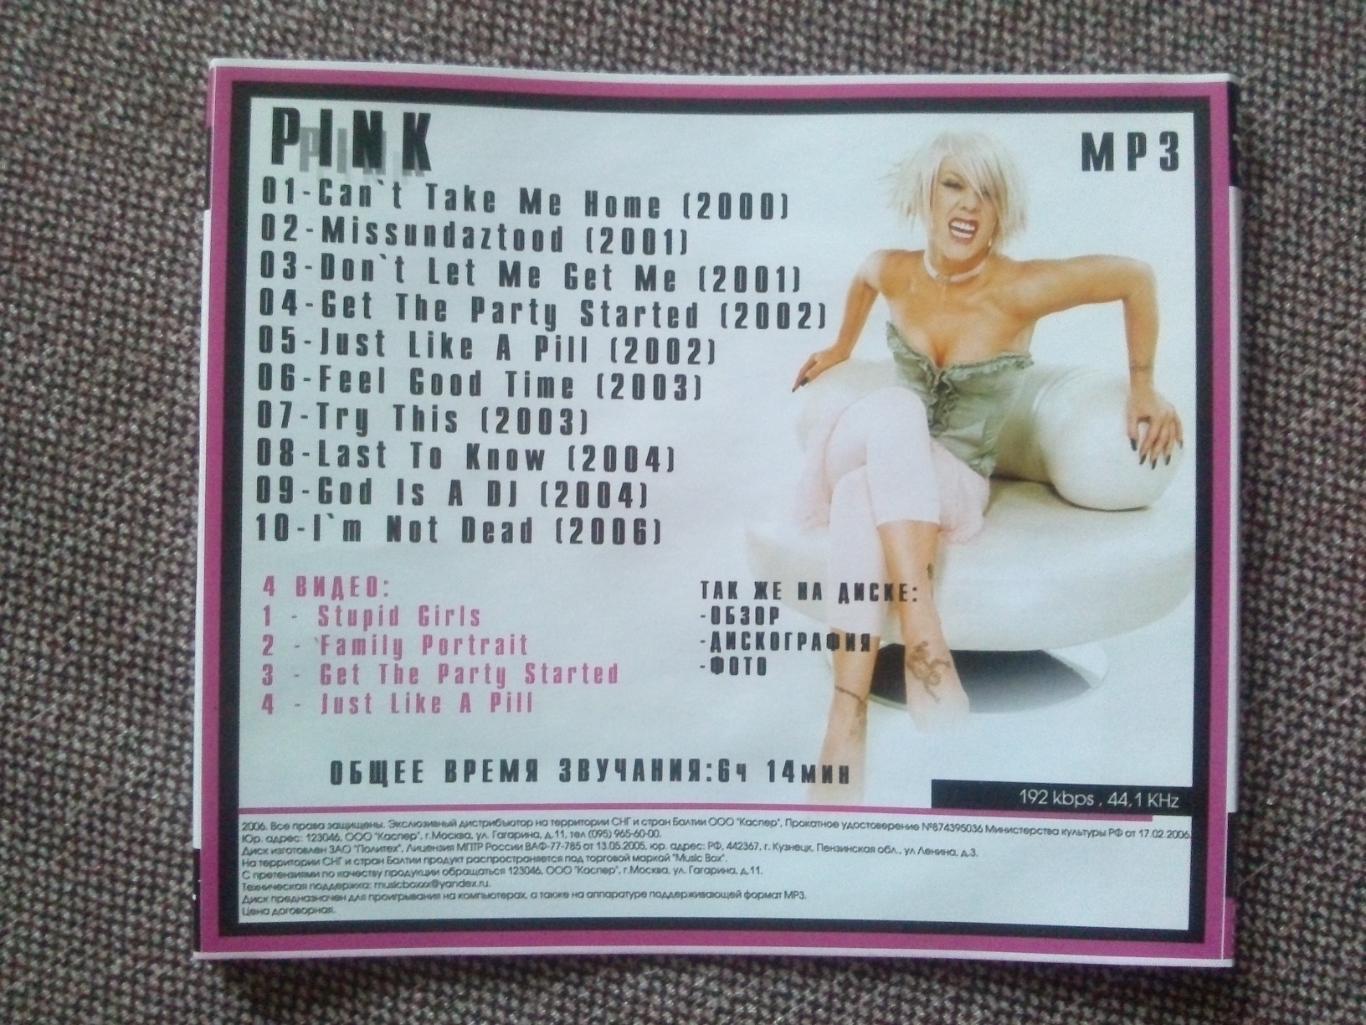 MP - 3 CD диск :Pink2000 - 2006 гг. (10 альбомов + 4 видео) лицензия Рок 5